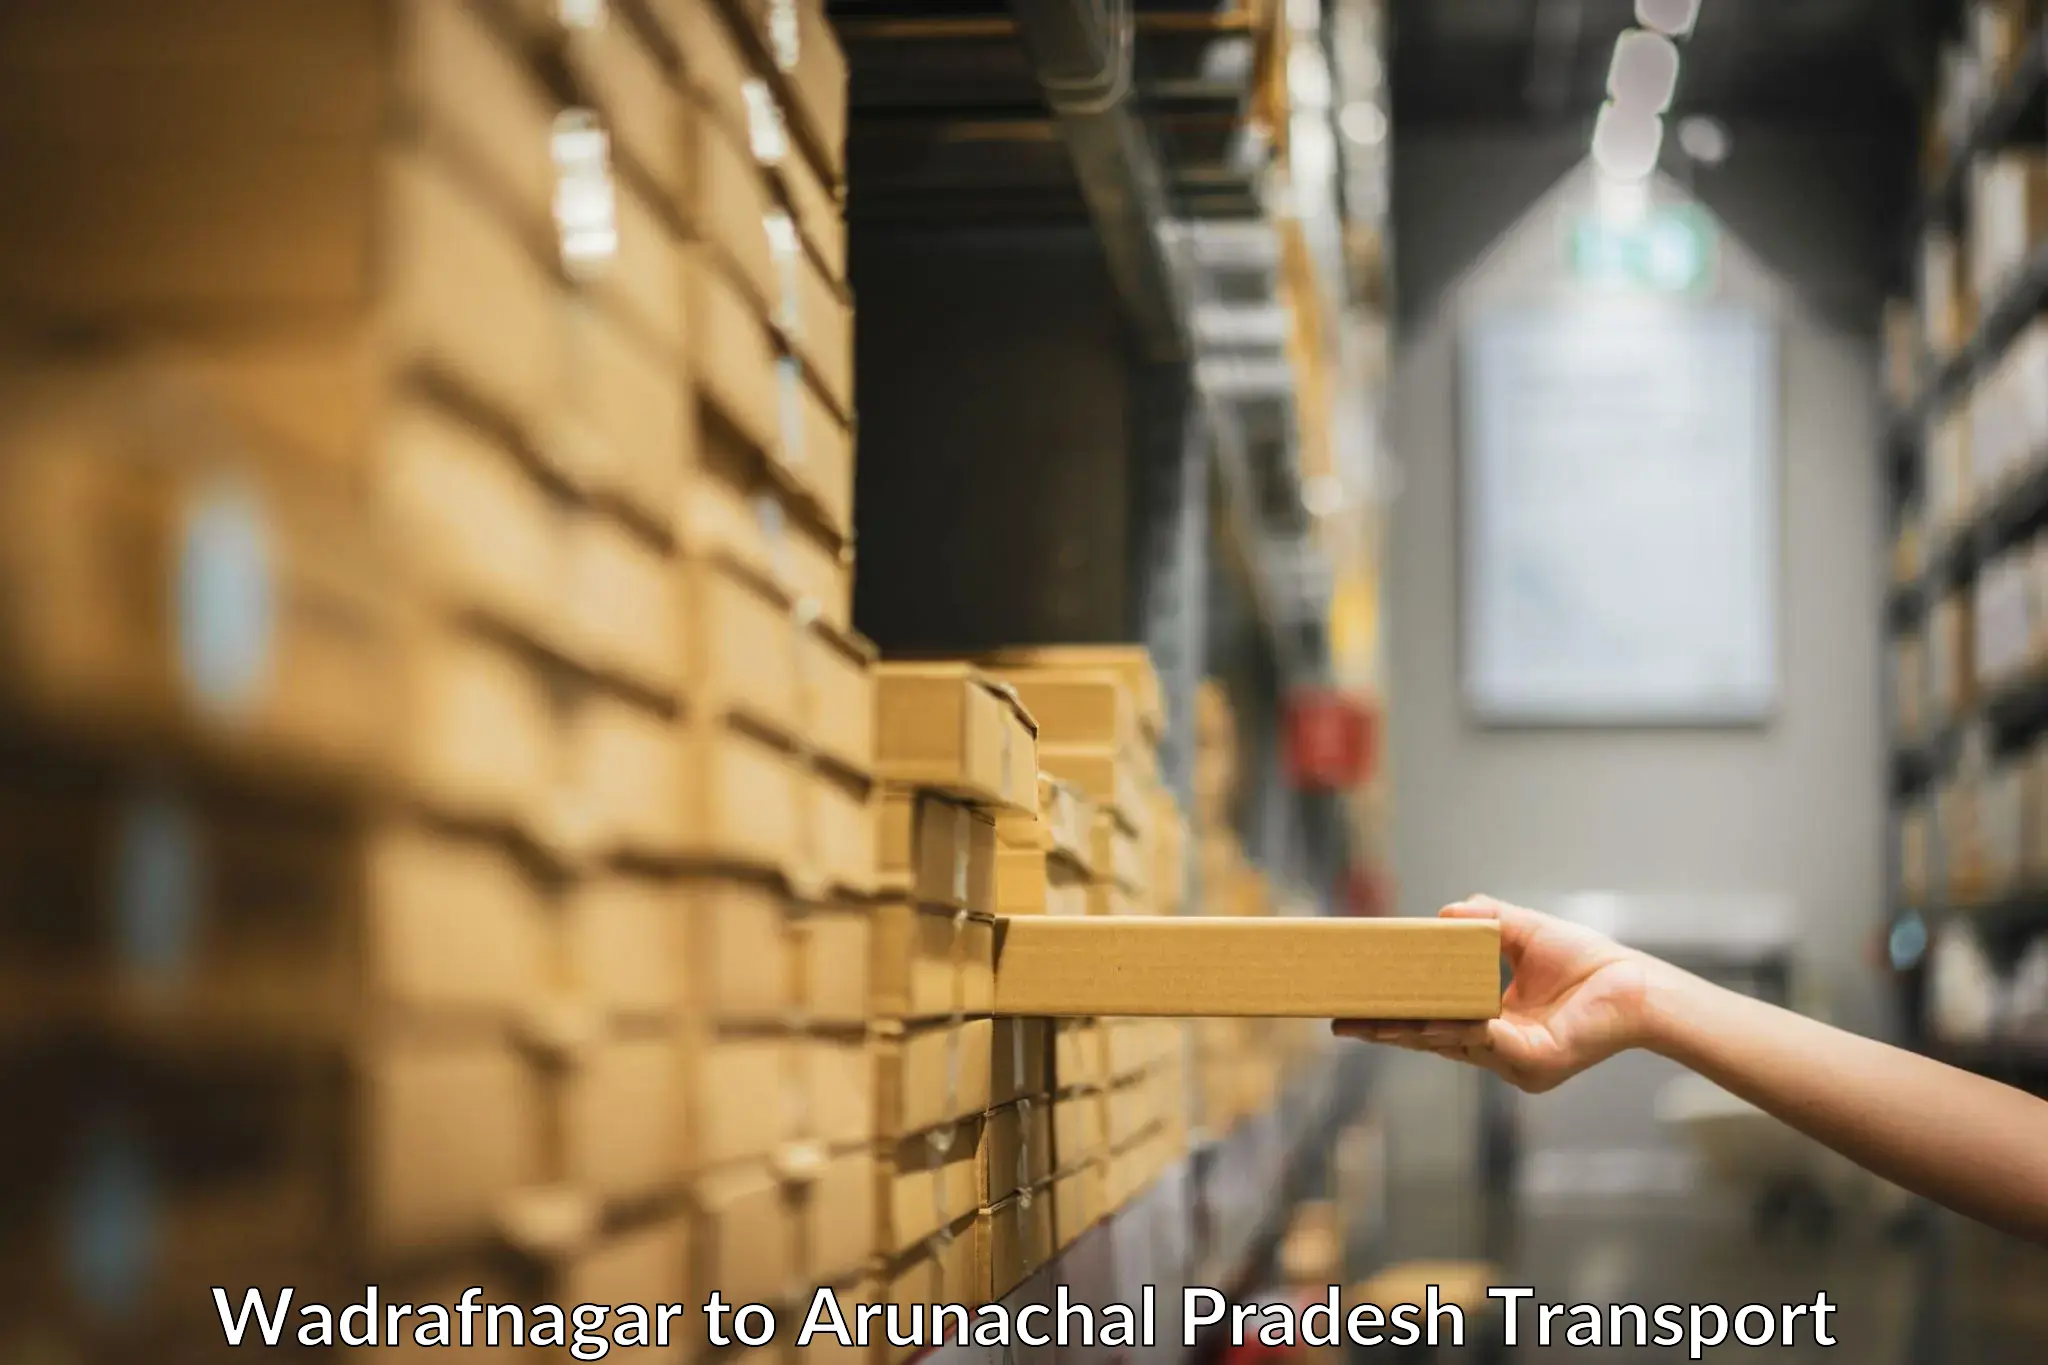 Container transport service Wadrafnagar to Namsai